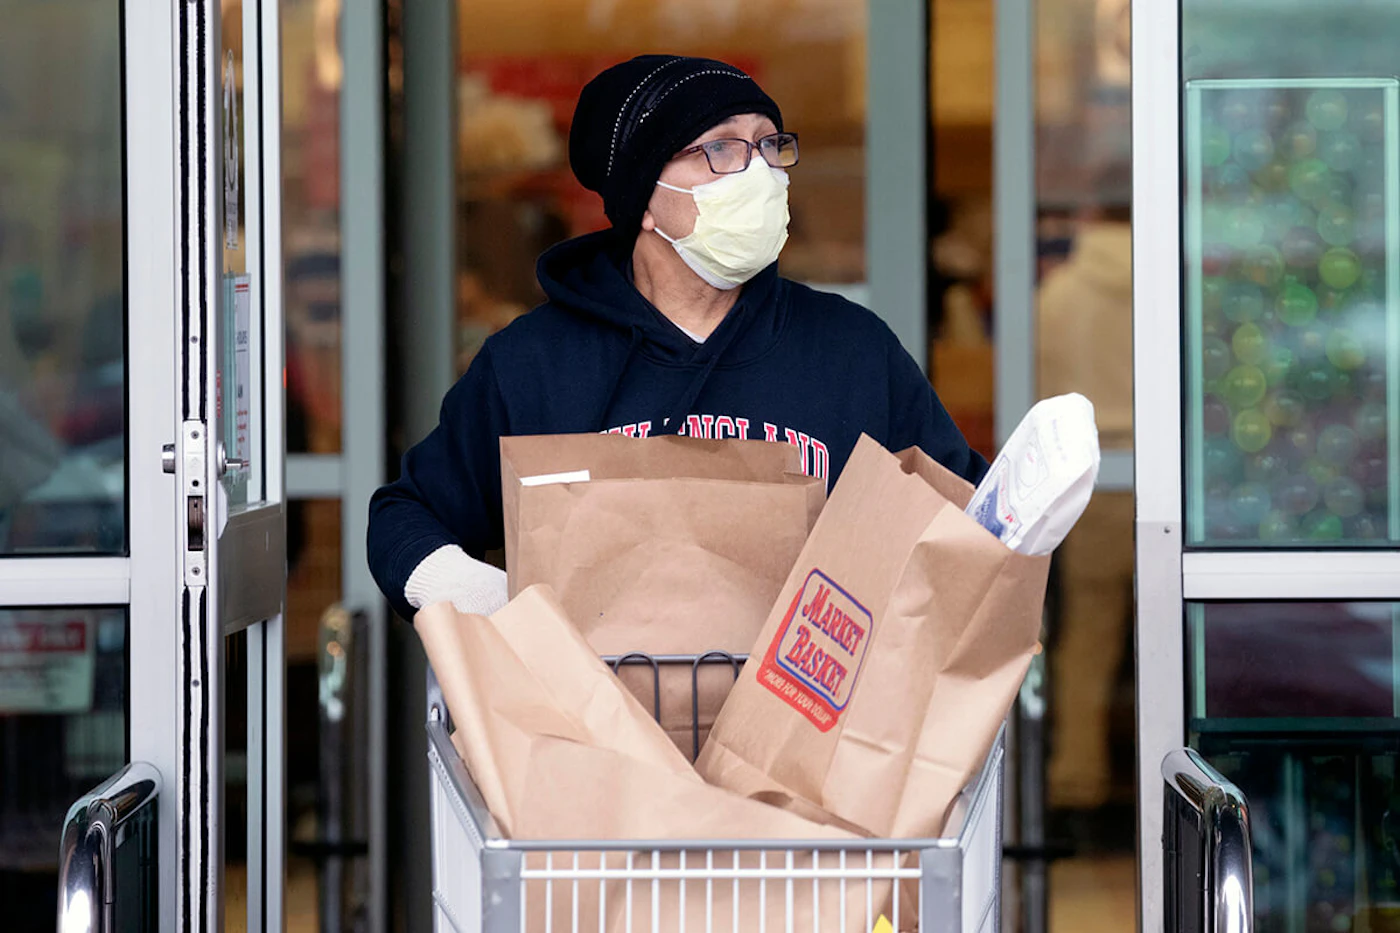 man wearing mask using shopping cart full of groceries